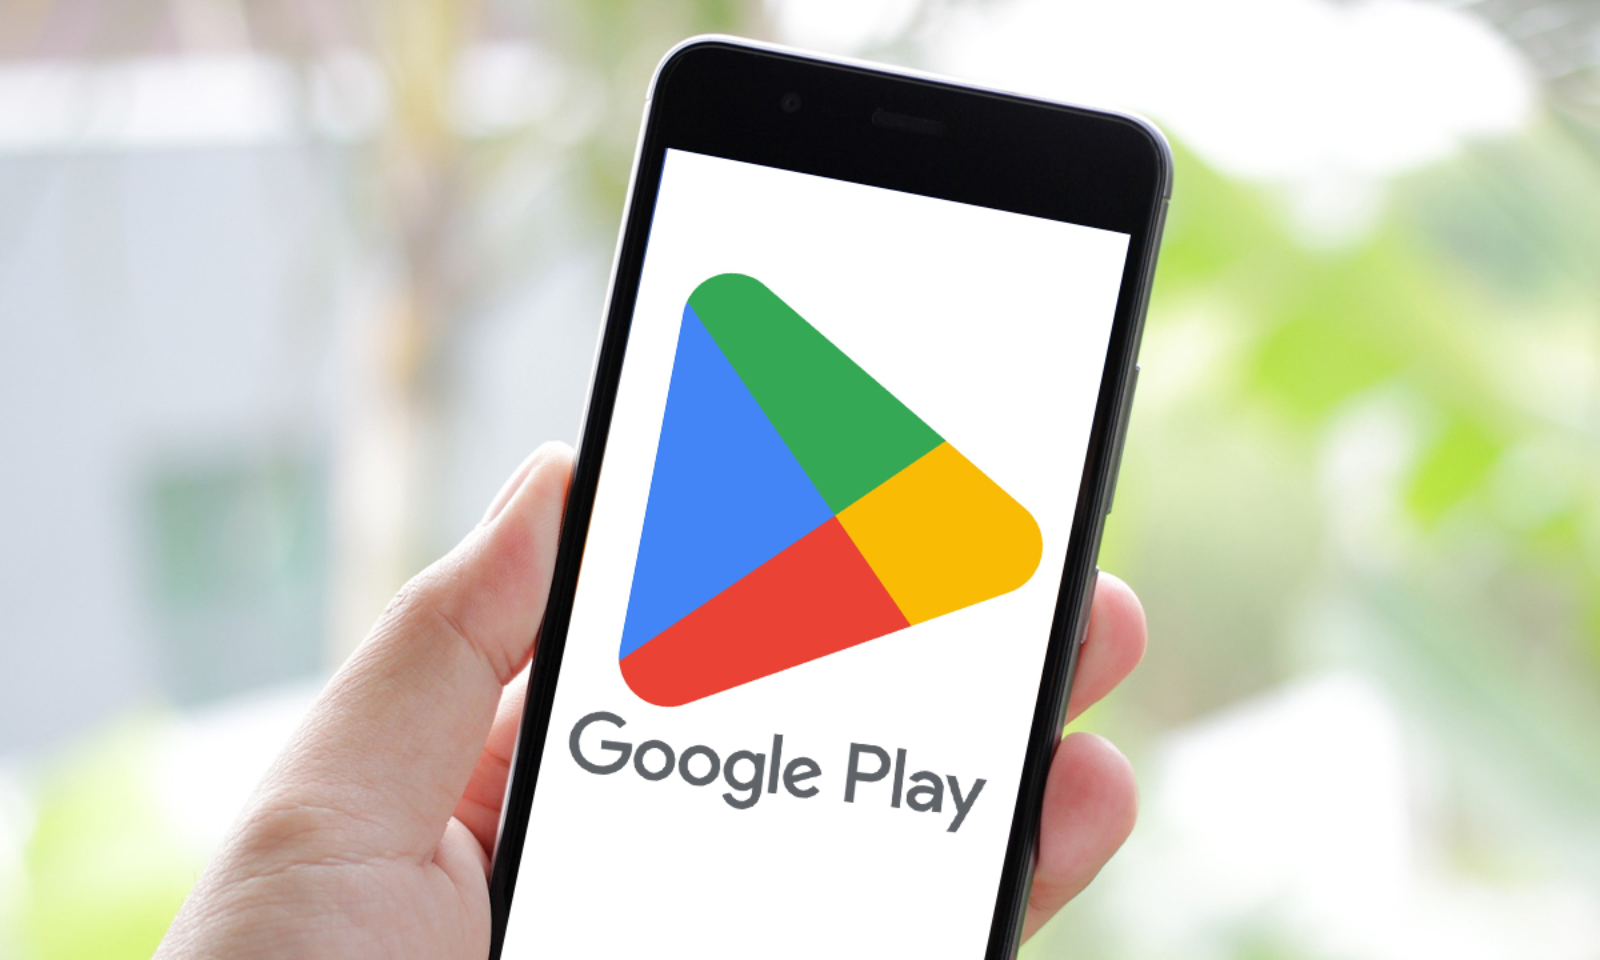 Google Play heeft een nieuw tabblad "Zoeken" in de onderste balk